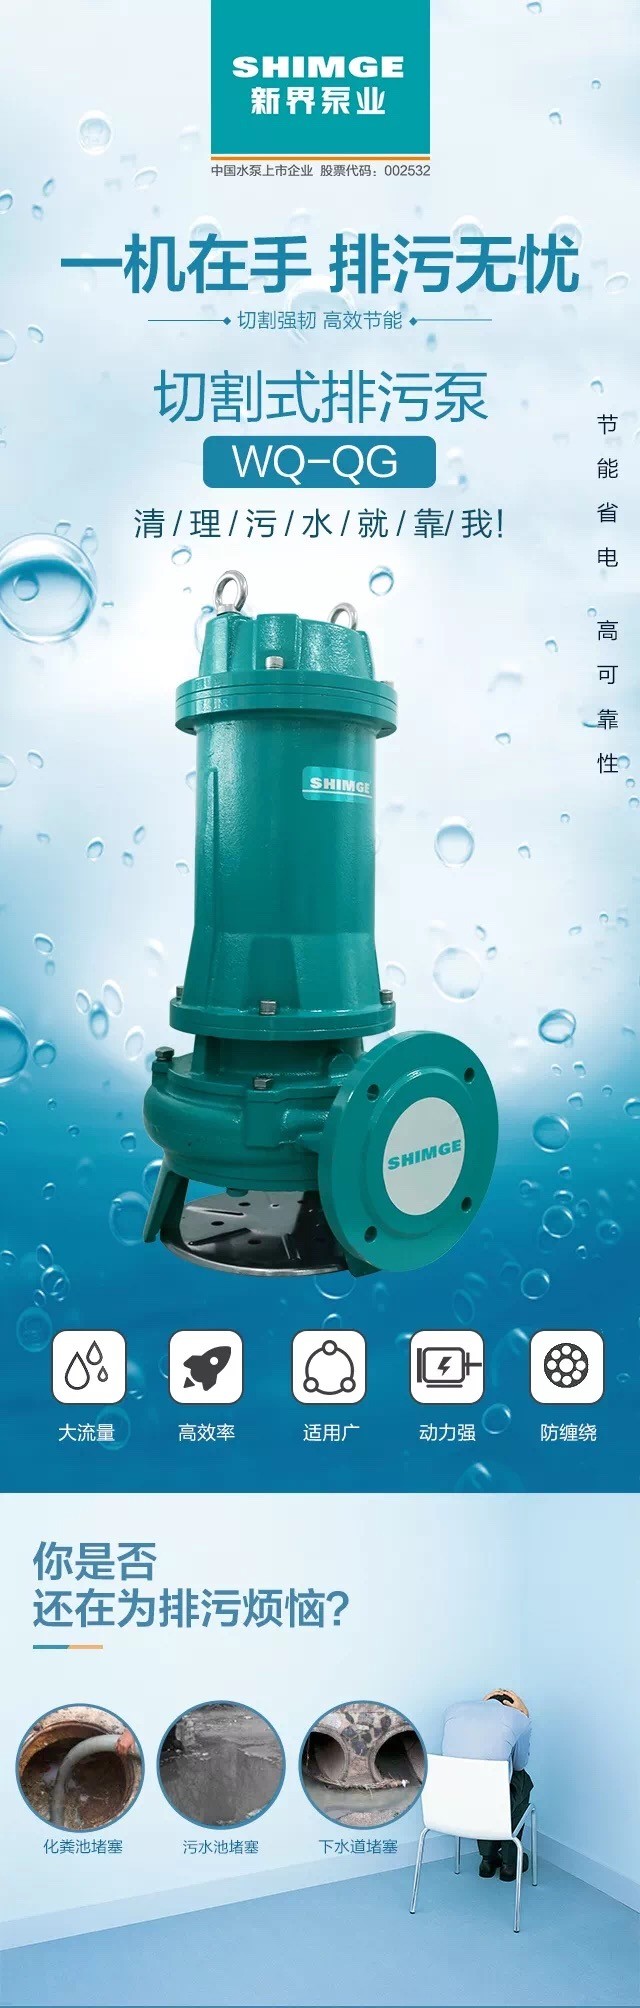 新界水泵切割式污水泵380V/220V工业污水潜水泵家用化粪池抽粪排污泵详情1